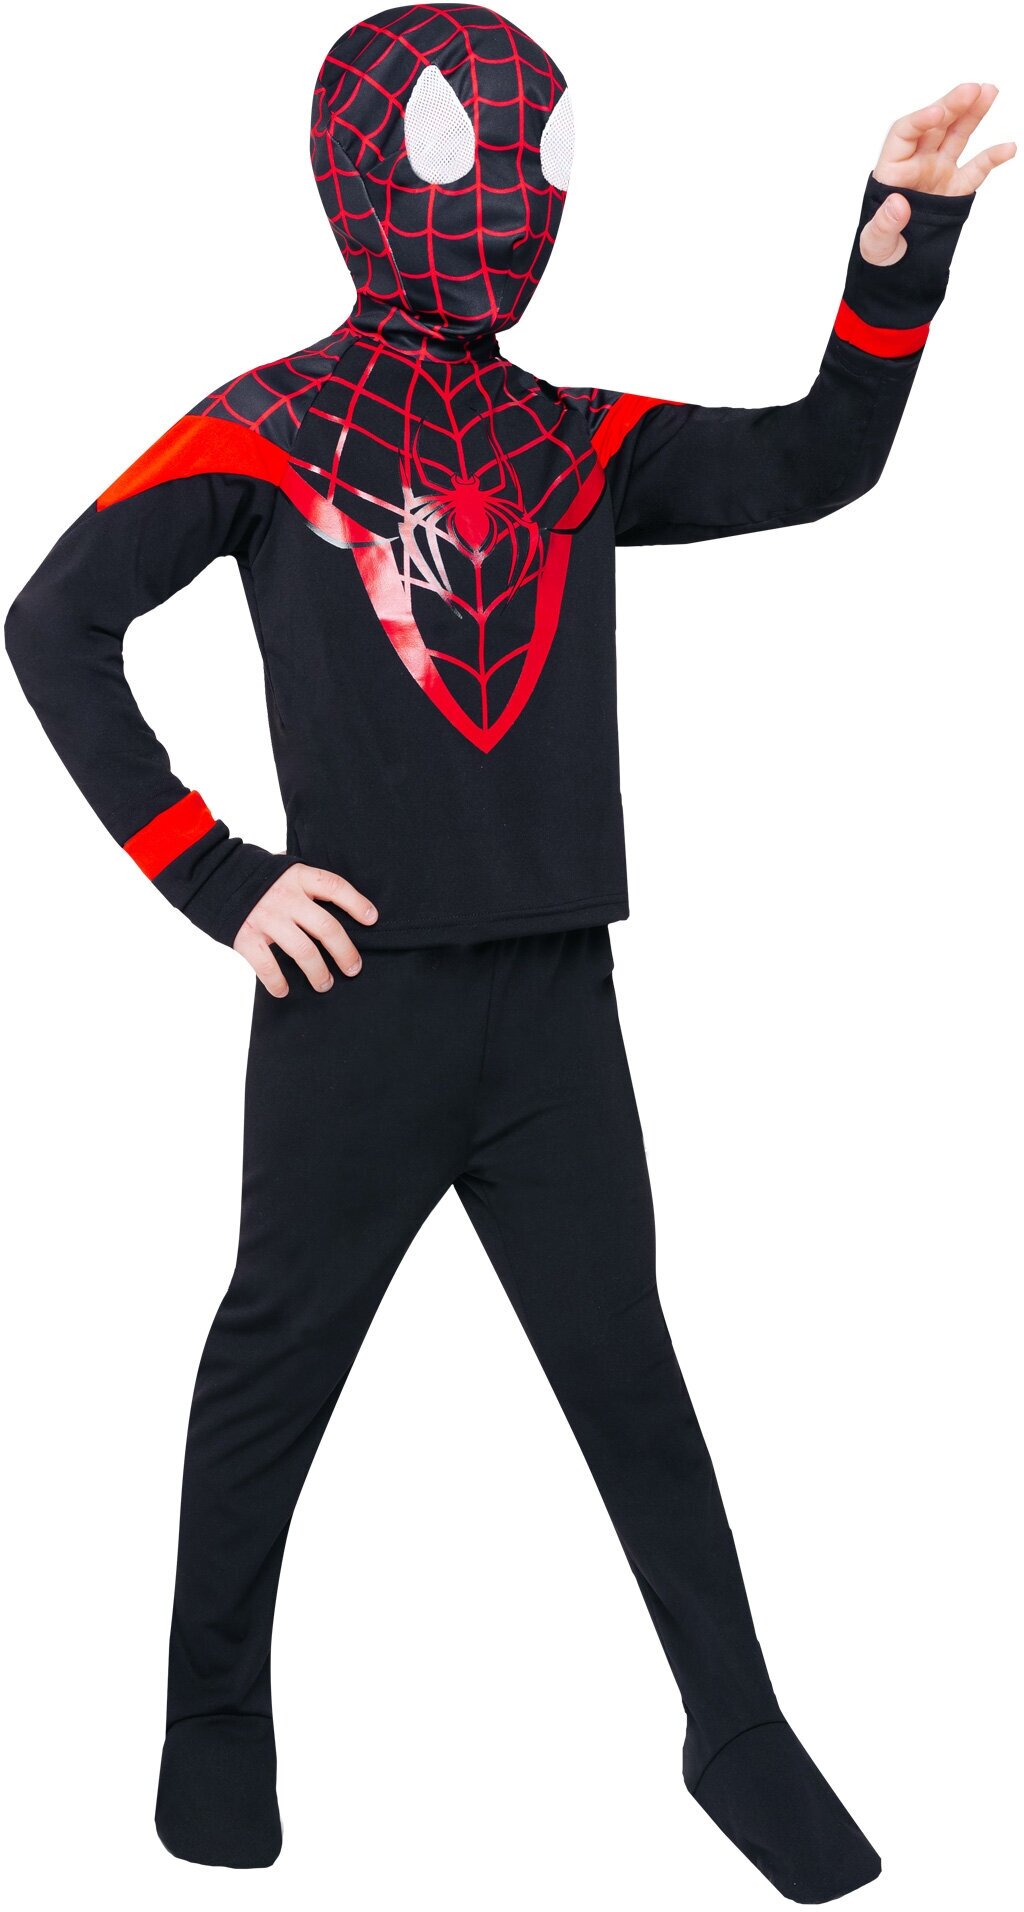 Костюм Человек-паук (9016 к-21), размер 128, цвет мультиколор, бренд Пуговка